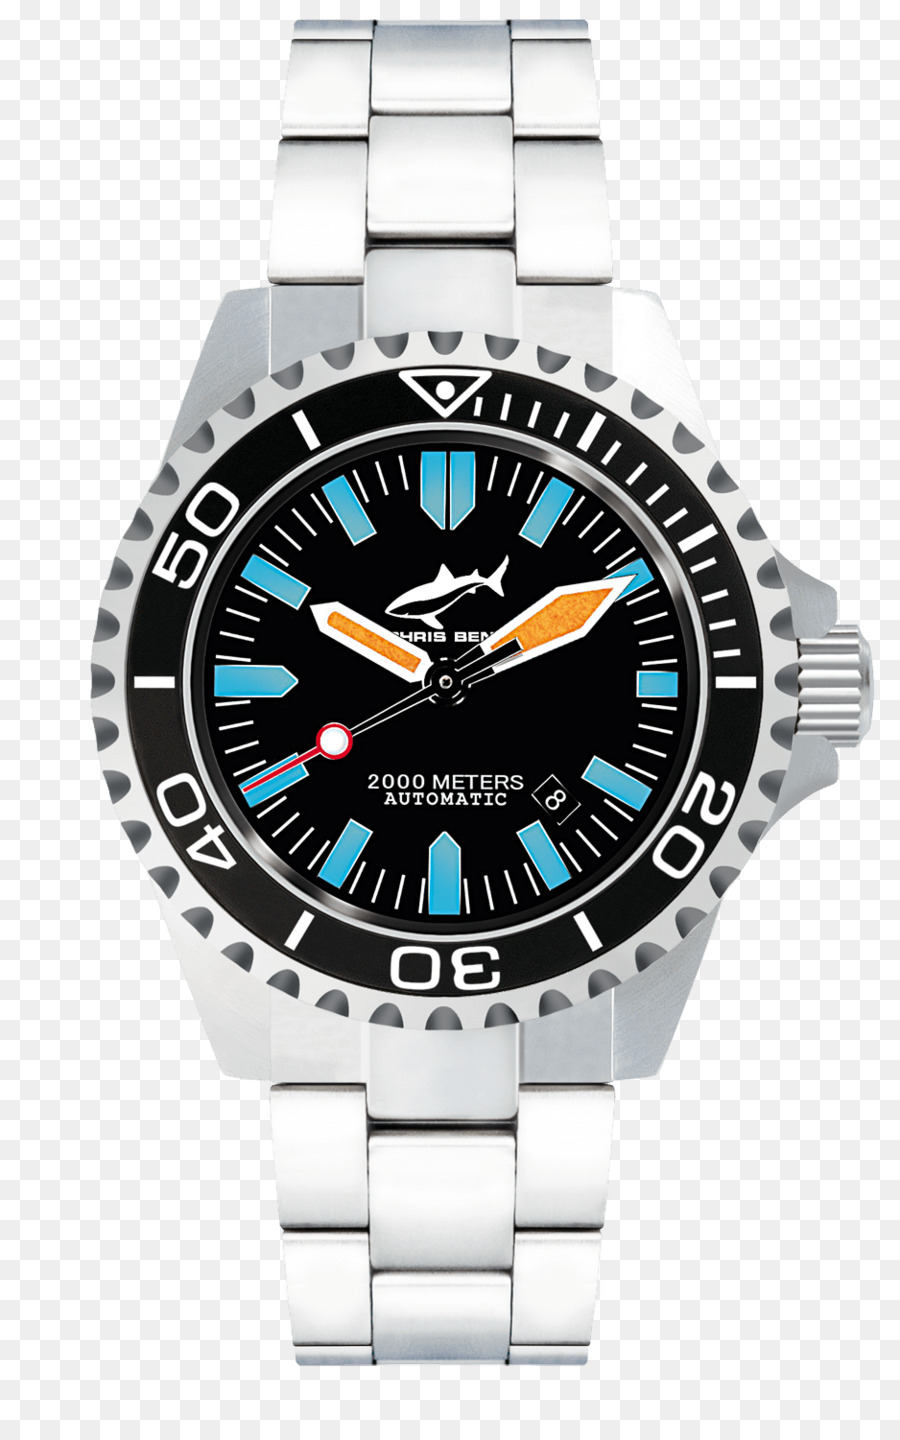 Orologio automatico Amazon.com orologio subacqueo Orologio - guarda